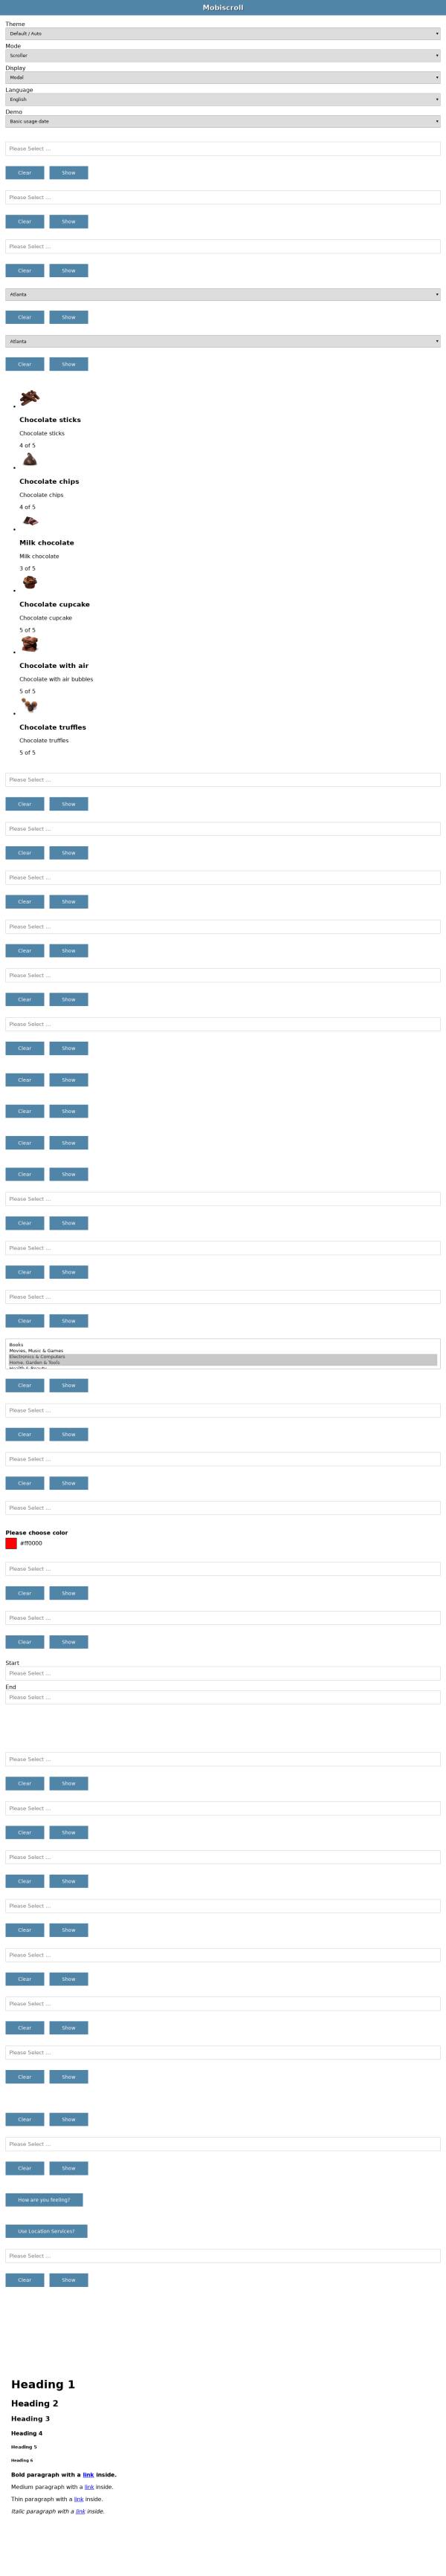 html5手机页面日历控件_触屏滑动日期选择器